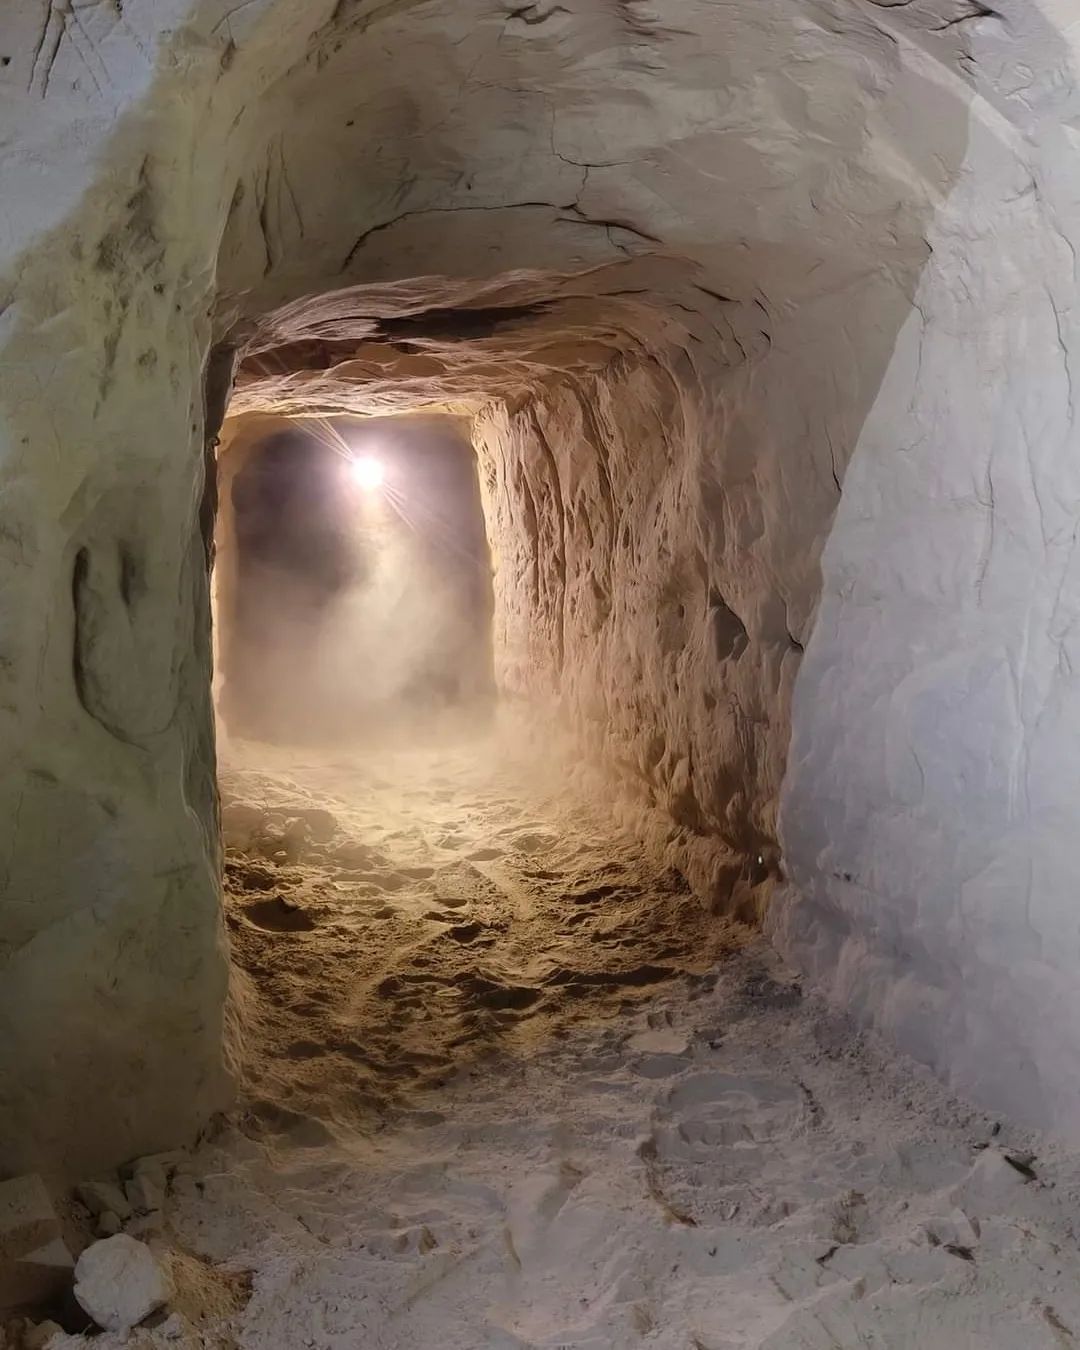 Київраду закликають не допустити забудови на місці нововиявлених стародавніх печер на Вознесенці (ФОТО)